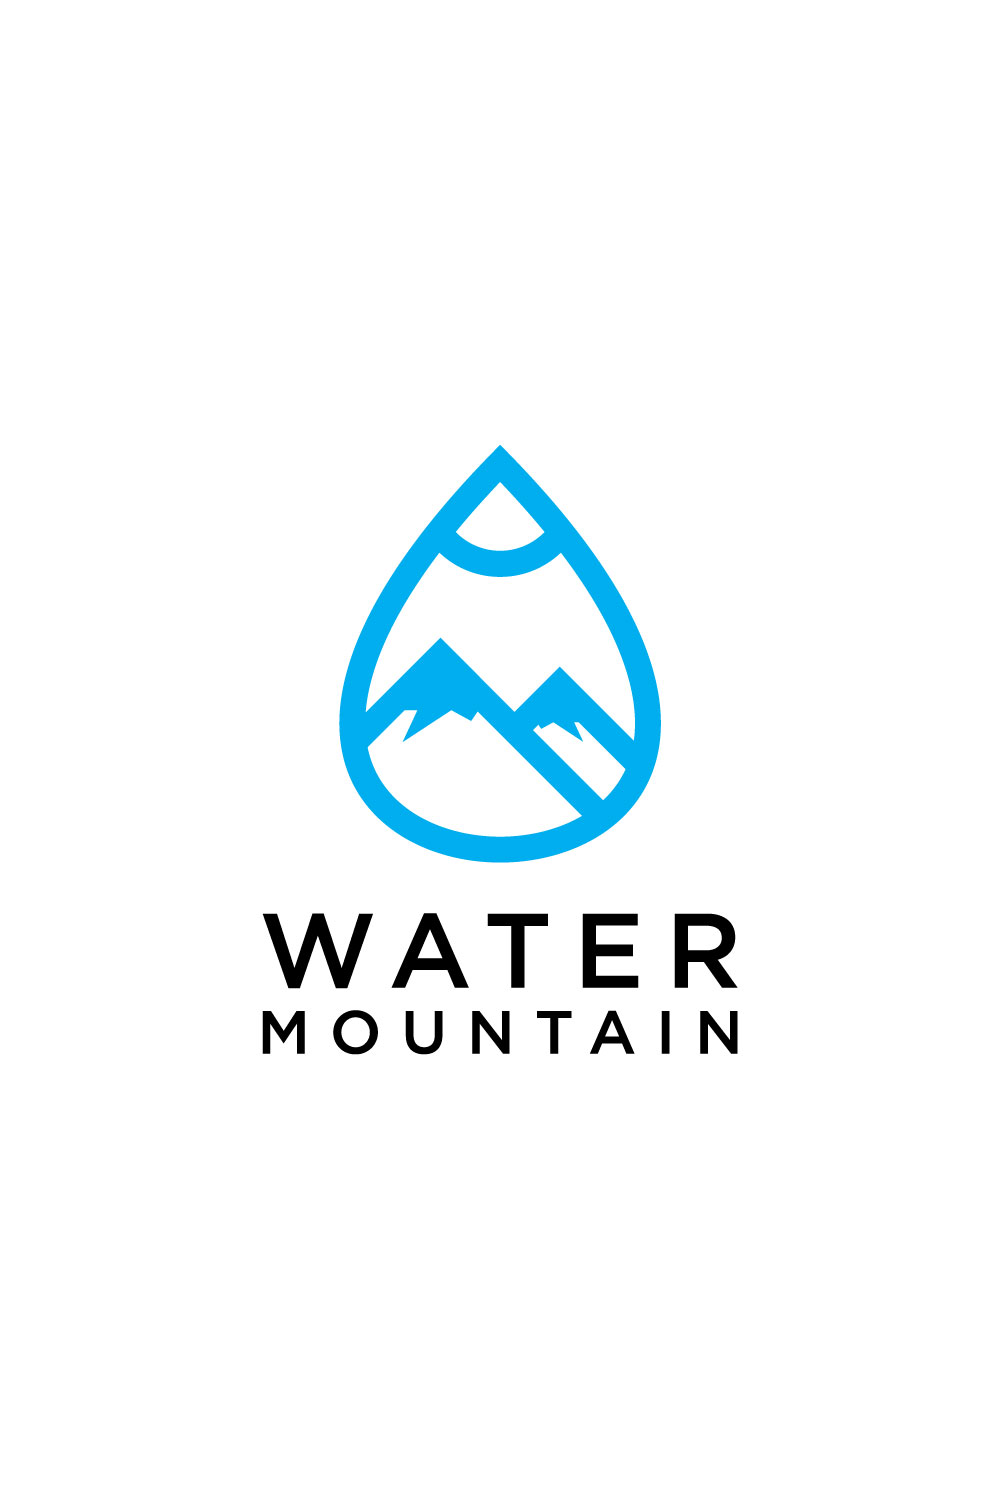 water mountain logo vector design - MasterBundles